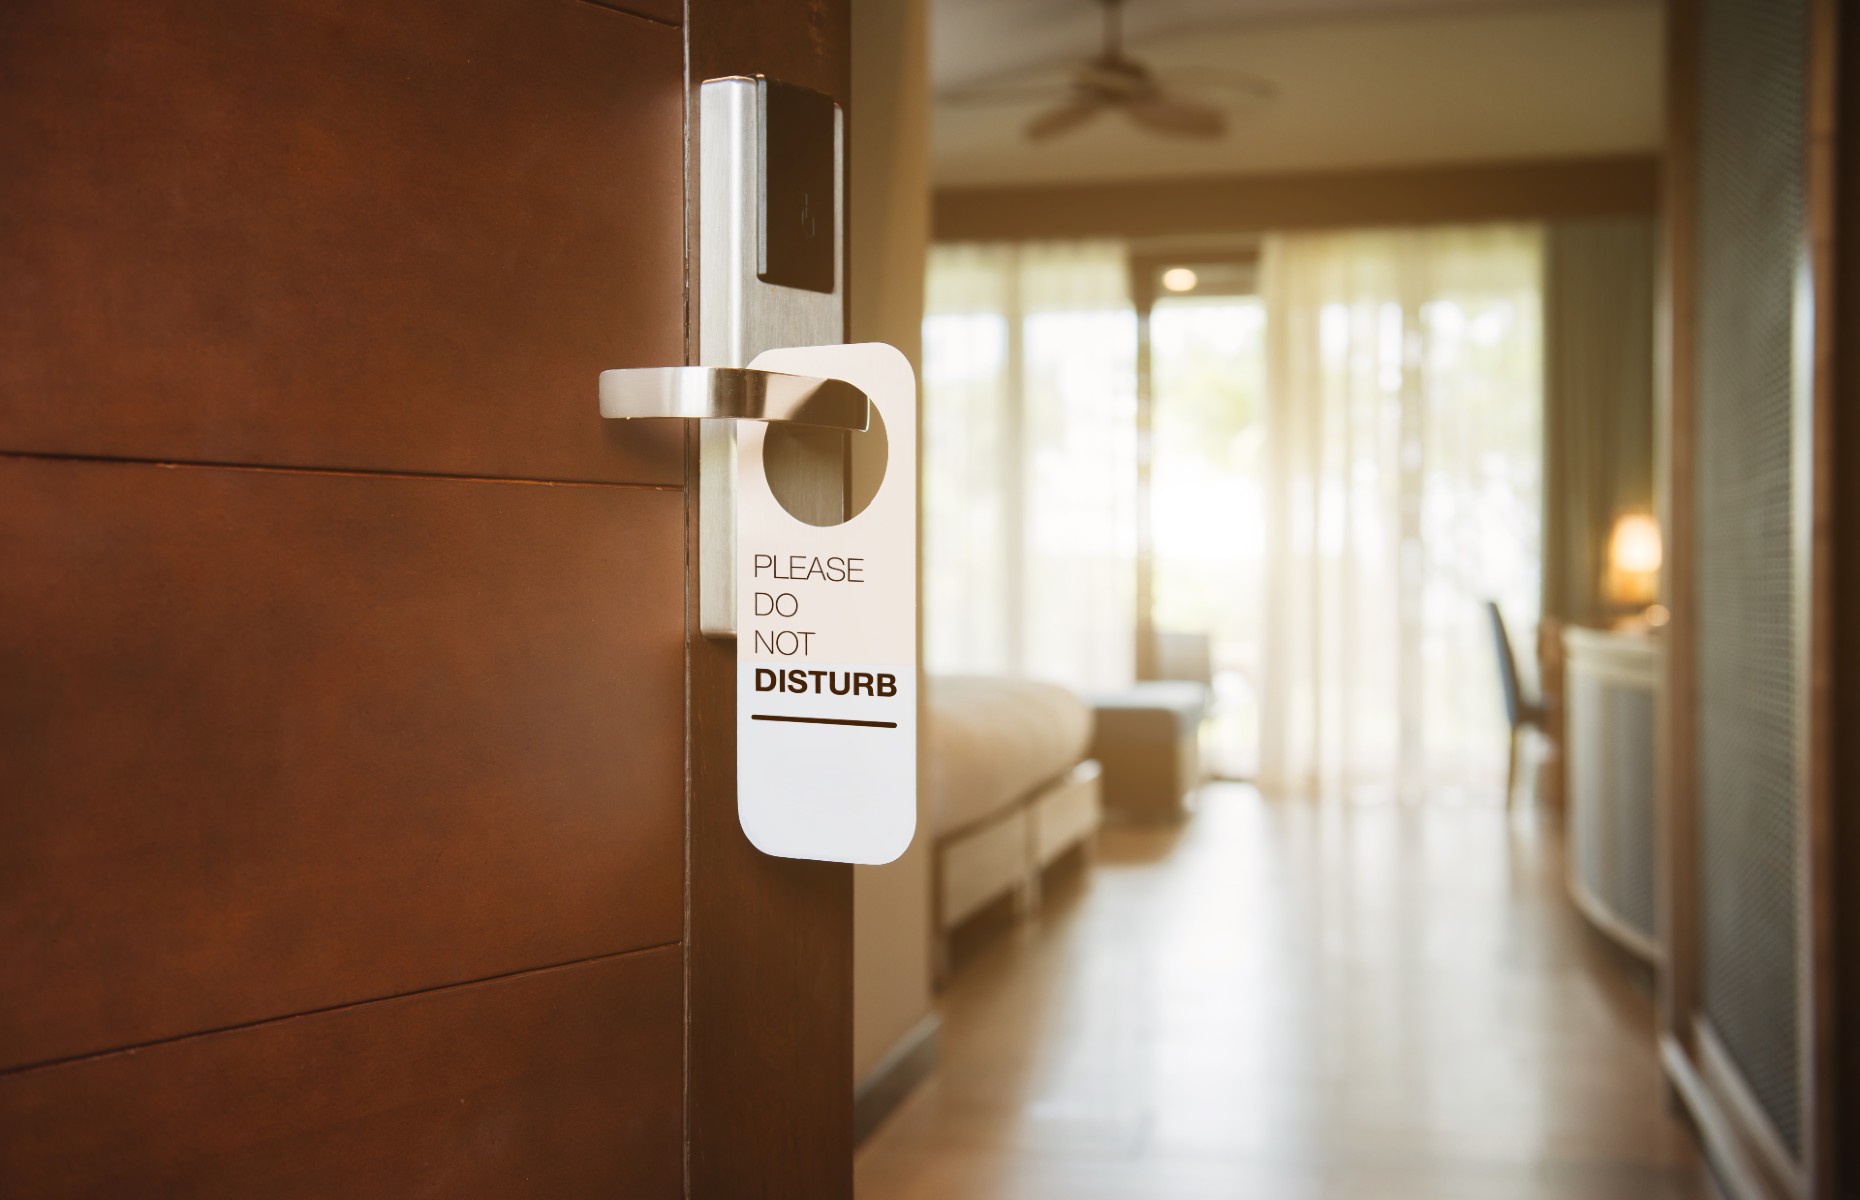 Do not disturb sign on hotel door (Makistock/Shutterstock)